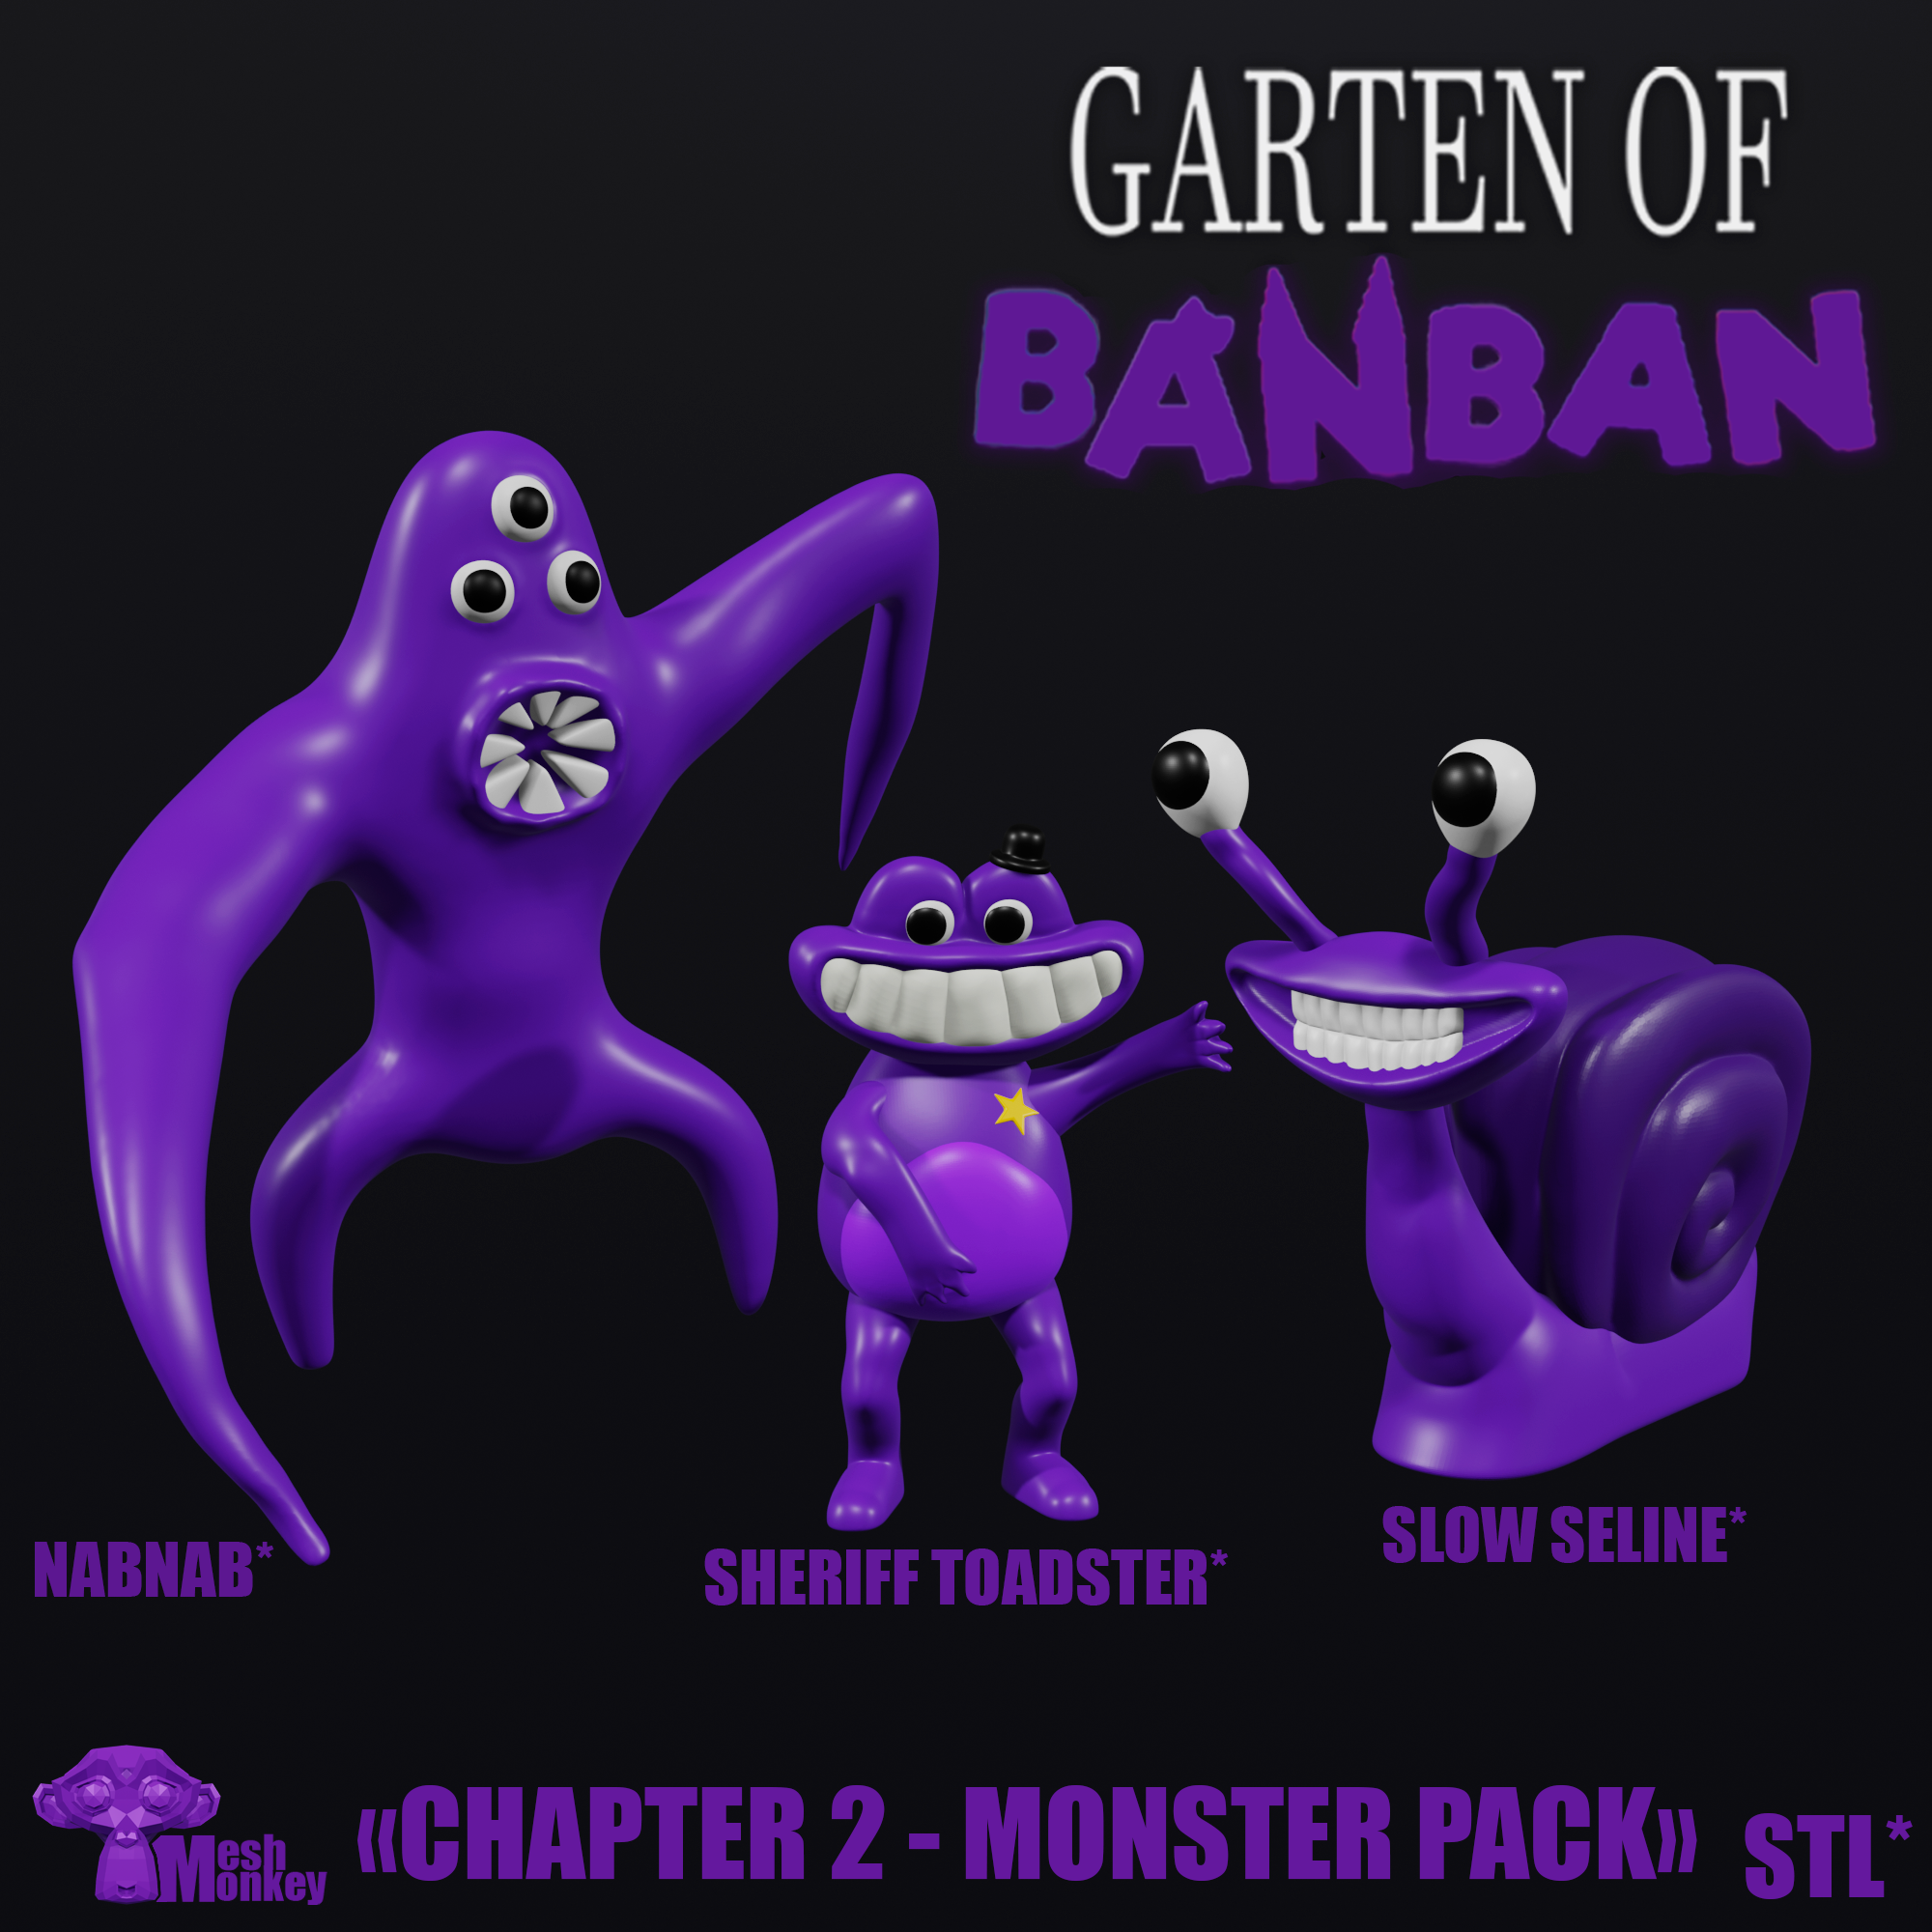 GARTEN OF BANBAN 2 FIRST LOOK.. BANBALEENA! - Garten of Banban 2 